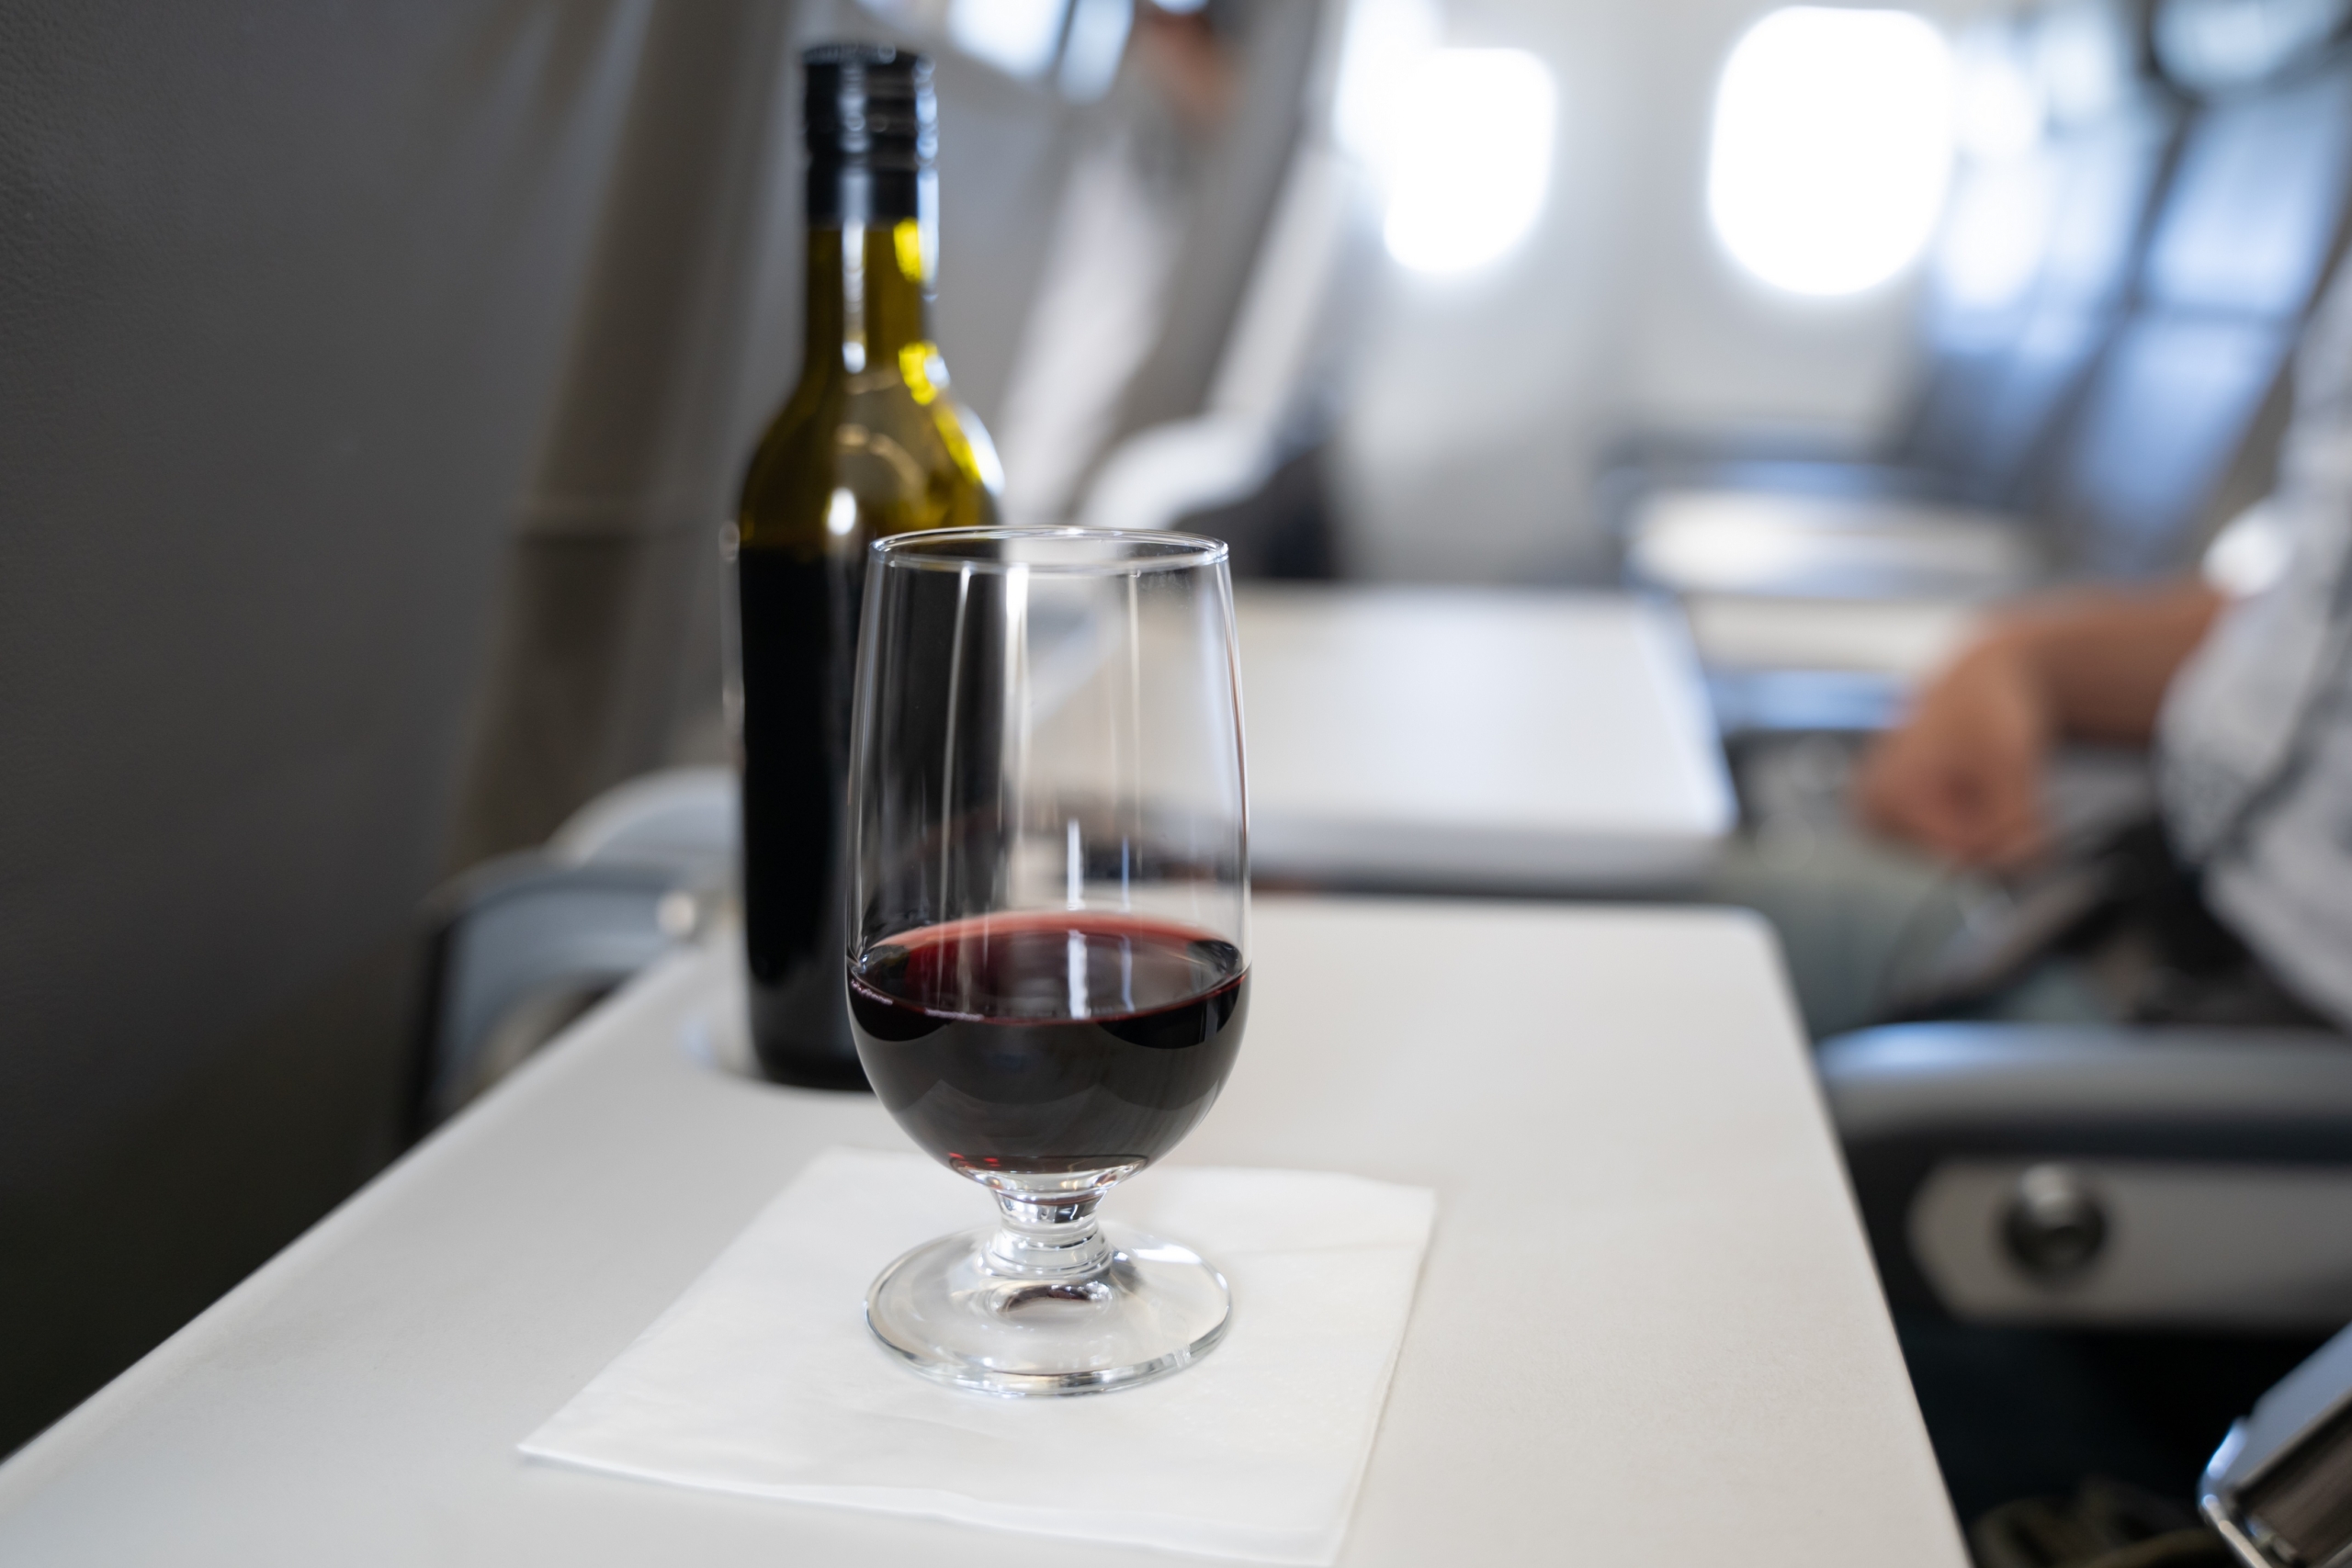 Uống rượu trước khi ngủ trên phi cơ có thể làm giảm nồng độ oxy trong máu và tăng nhịp tim, từ đó đe dọa sức khỏe tim mạch. (Ảnh: Shutterstock)